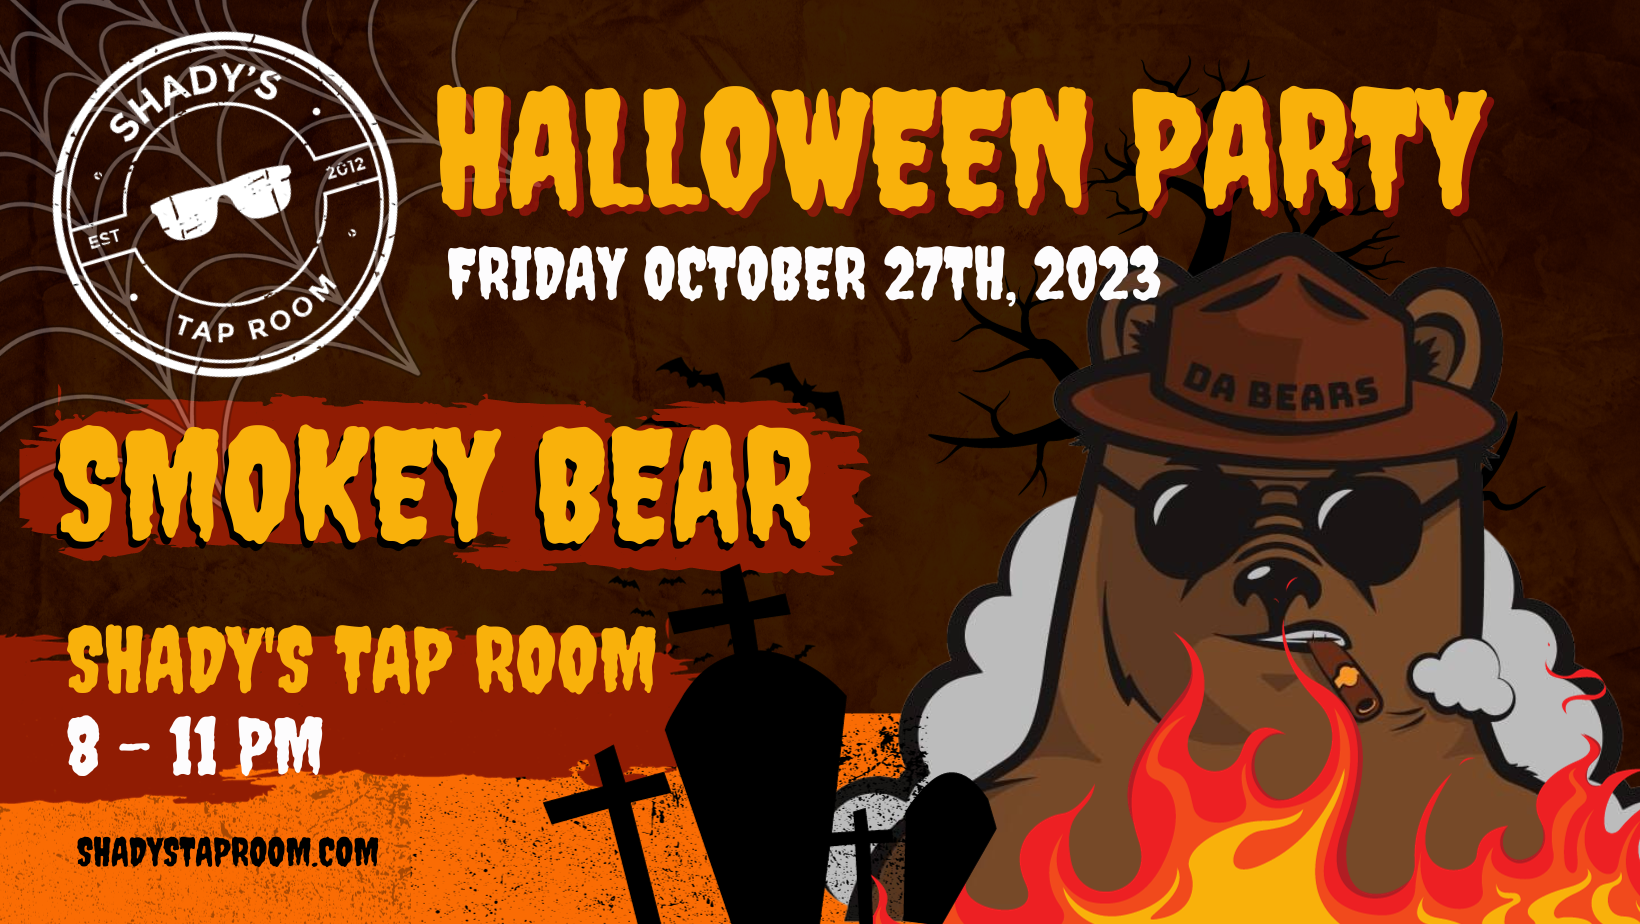 Smokey Bears Halloween Party at Shady's Tap Room